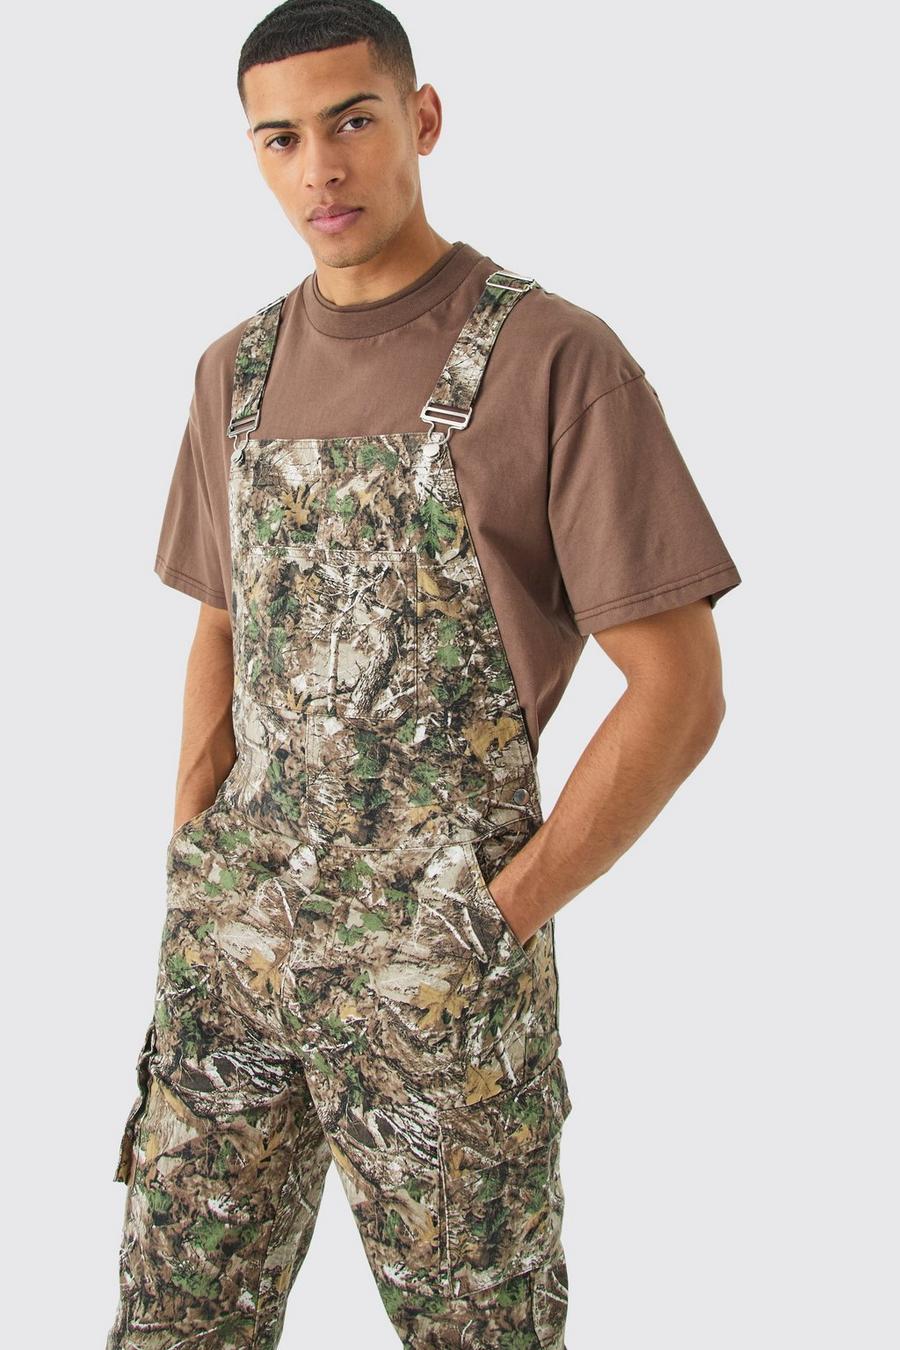 Lockere Camouflage Latzhose mit Cargo-Taschen, Khaki